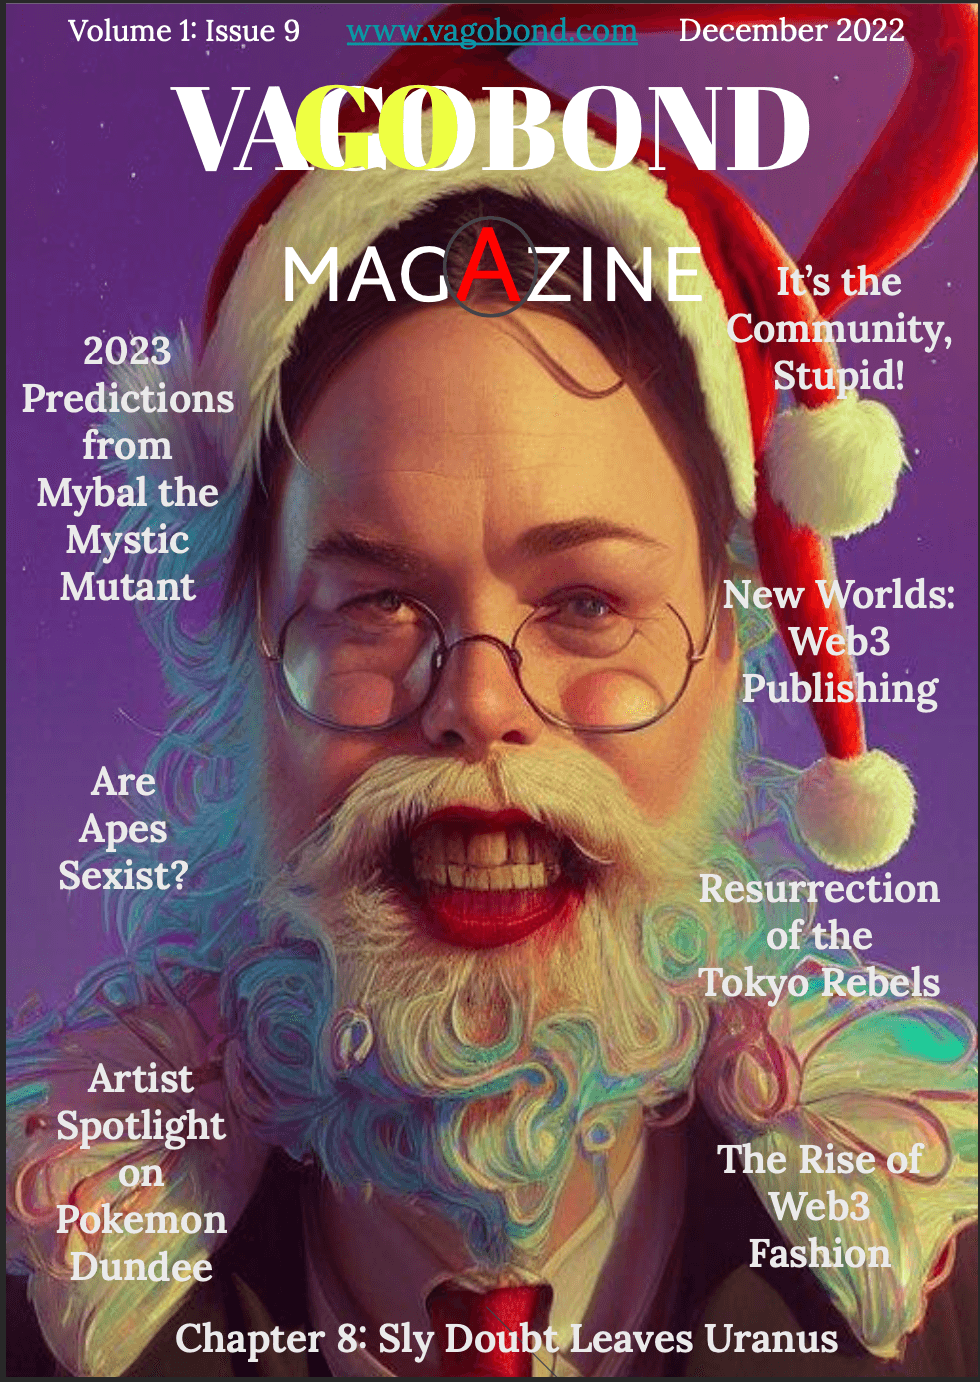 Vagobond Magazine | Issue 9 v.1.9 | December 2022